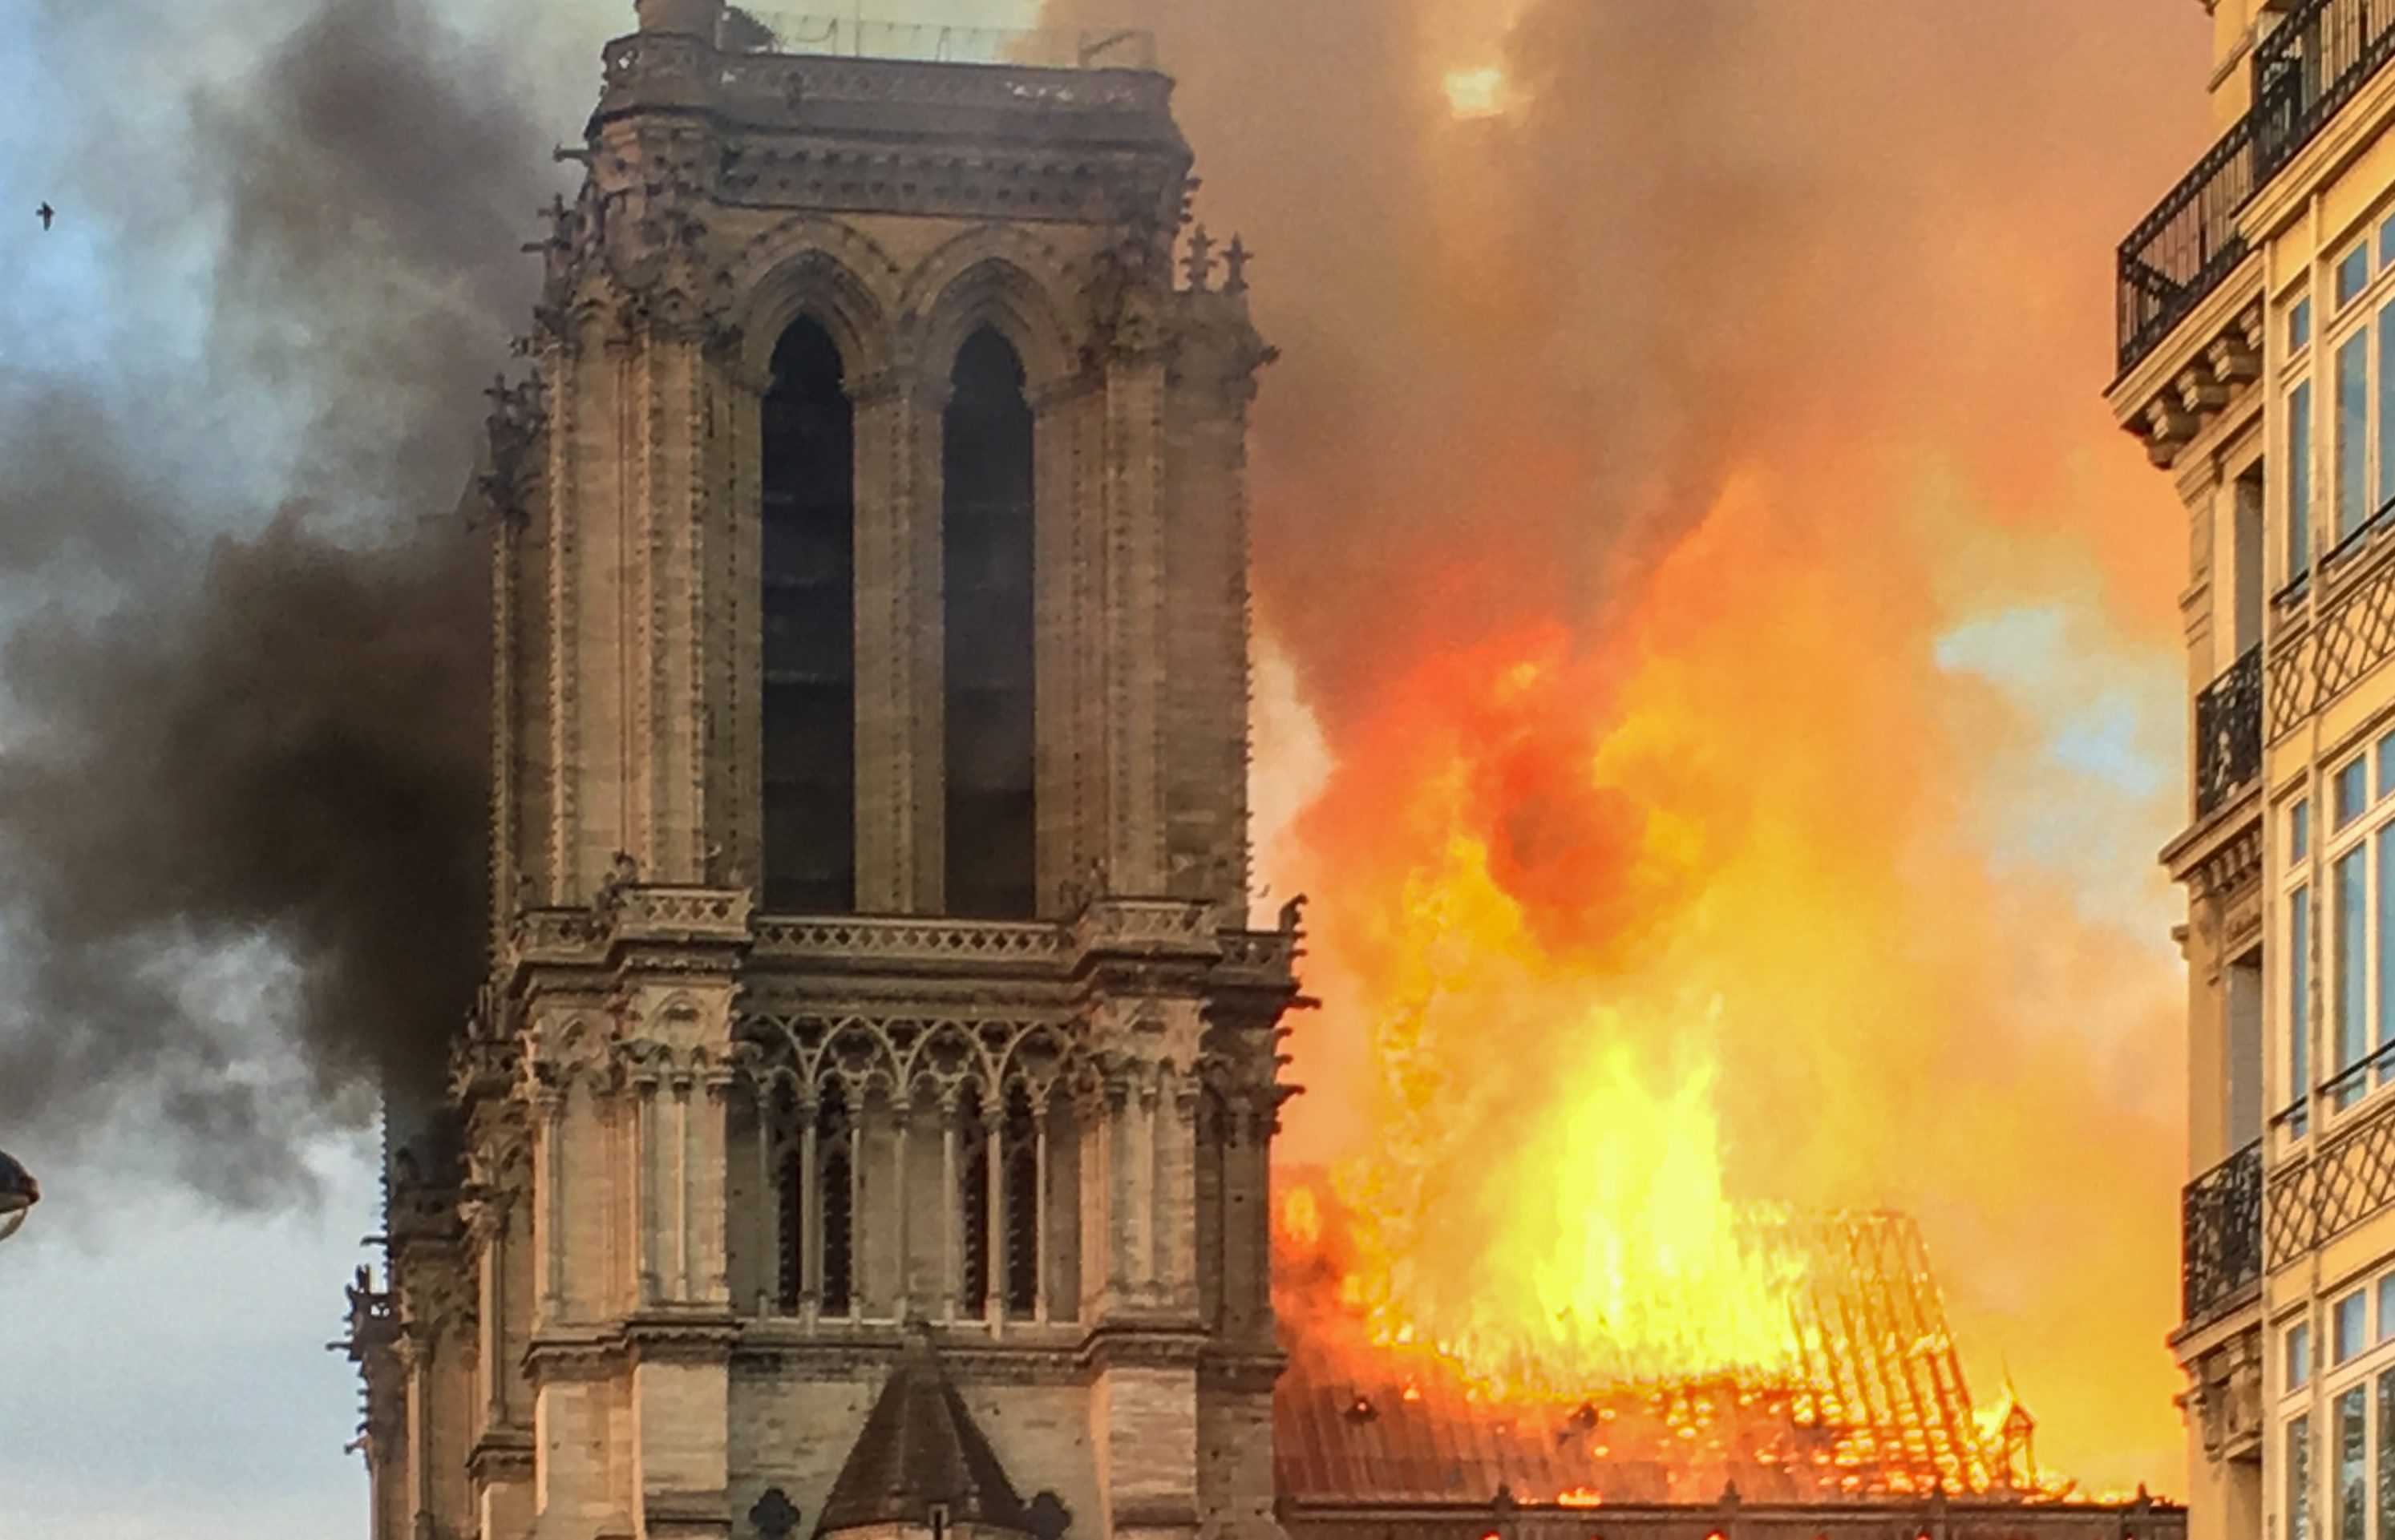 Сгорел нотр. Пожар в соборе Парижской Богоматери (2019). Пожар Нотр дама де пари 2019.